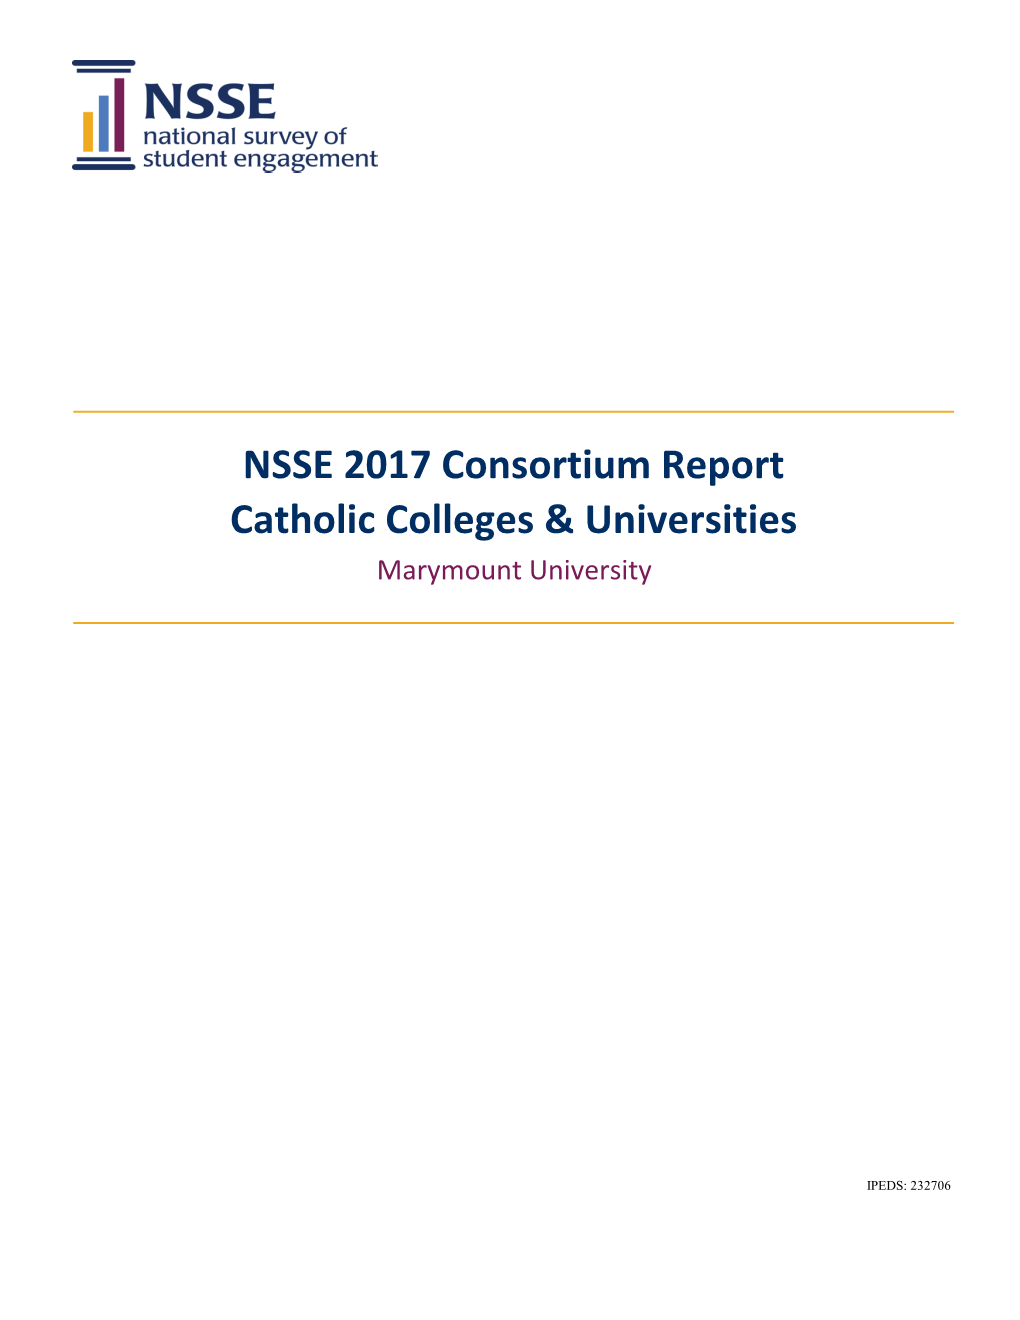 NSSE 2017 Consortium Report Catholic Colleges & Universities